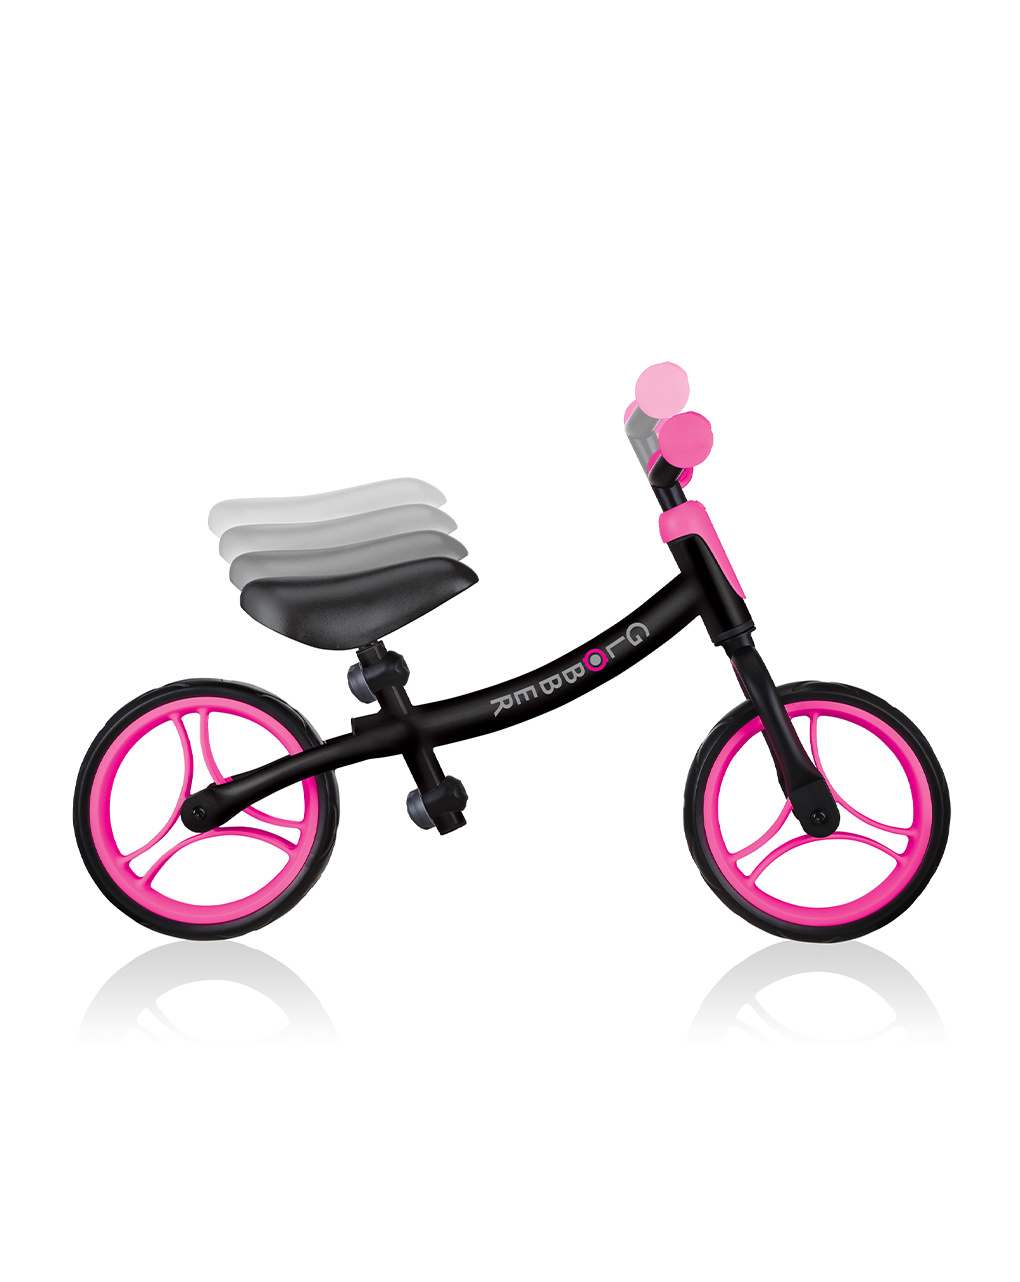 Go bike - nero e rosa neon - globber - Globber